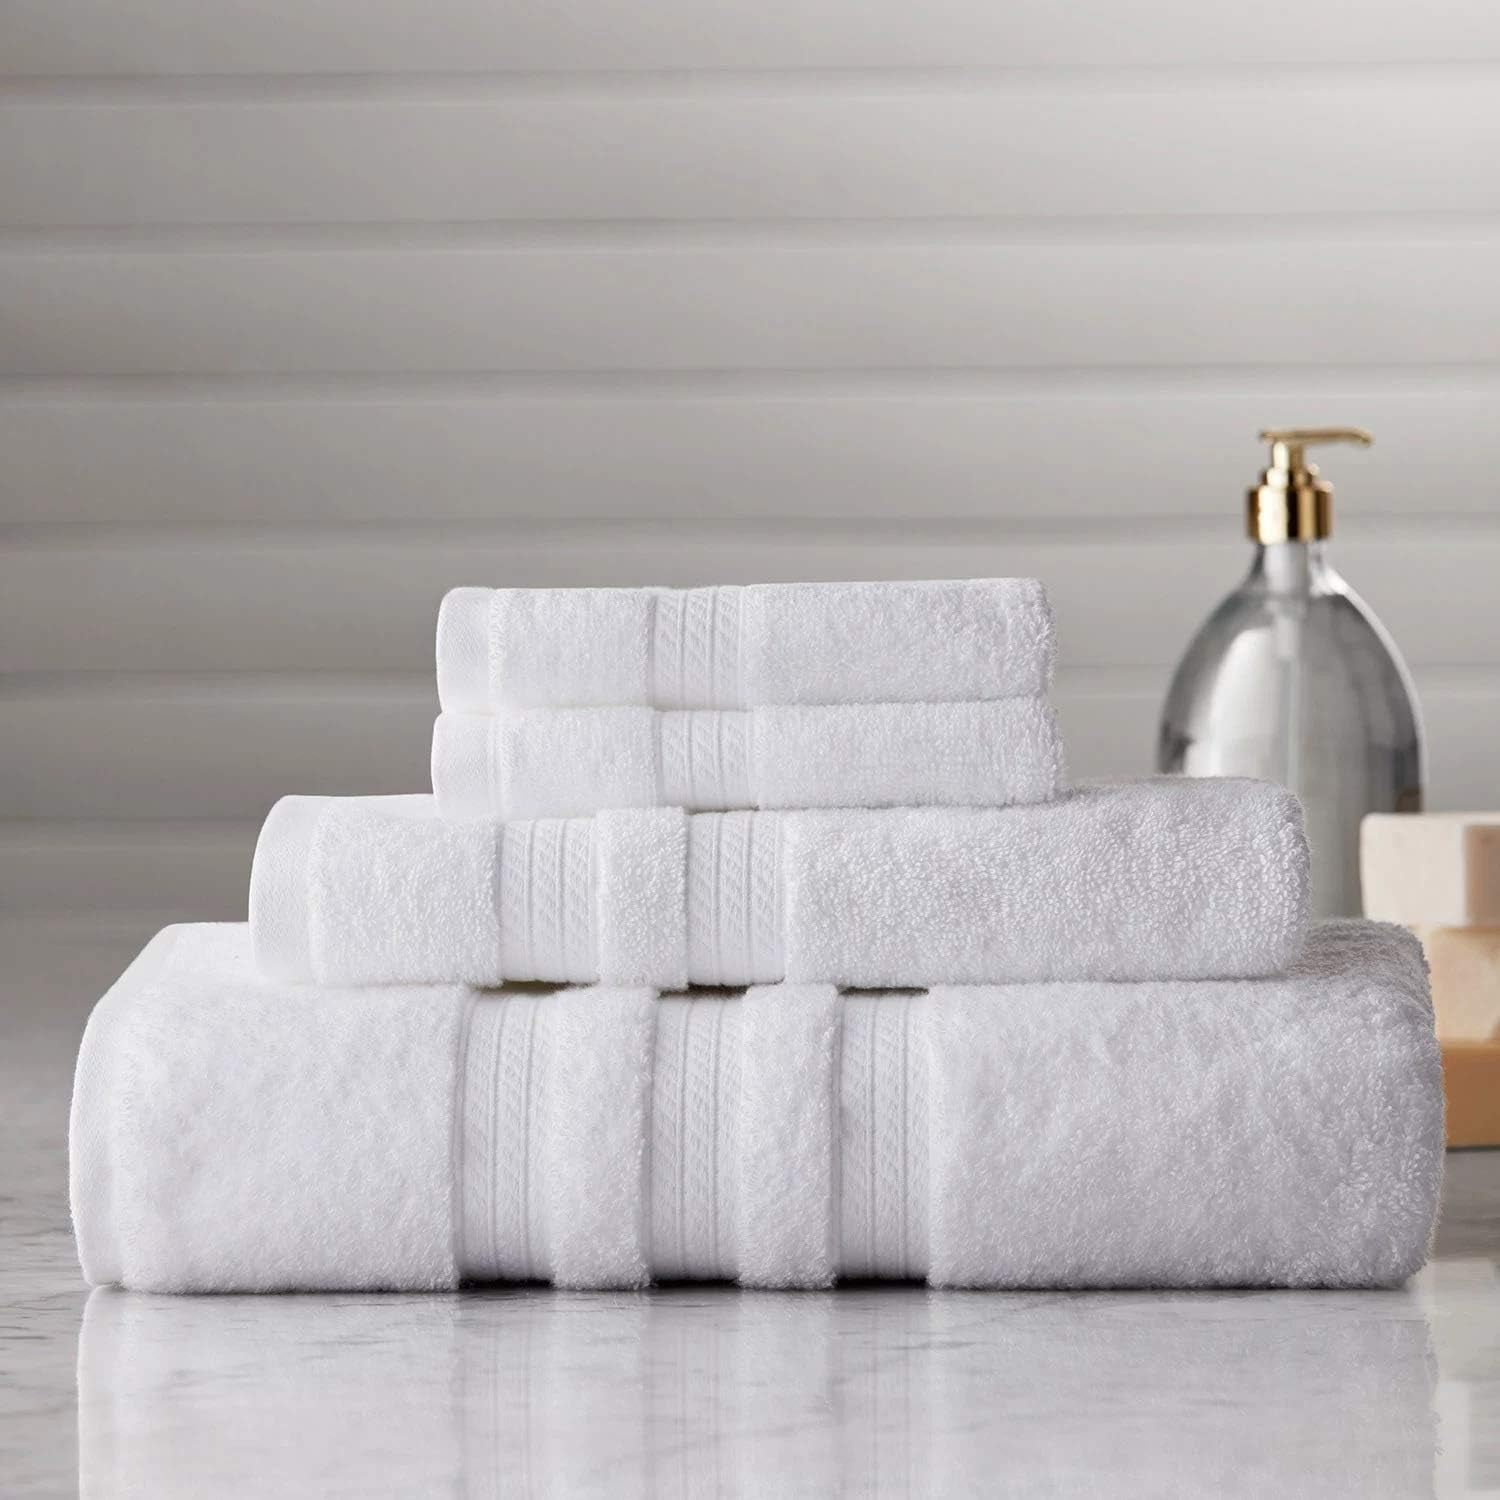 Hotel Premier Collection 100% Cotton Luxury Bath Towel, Blue, 1 unit -  Fry's Food Stores